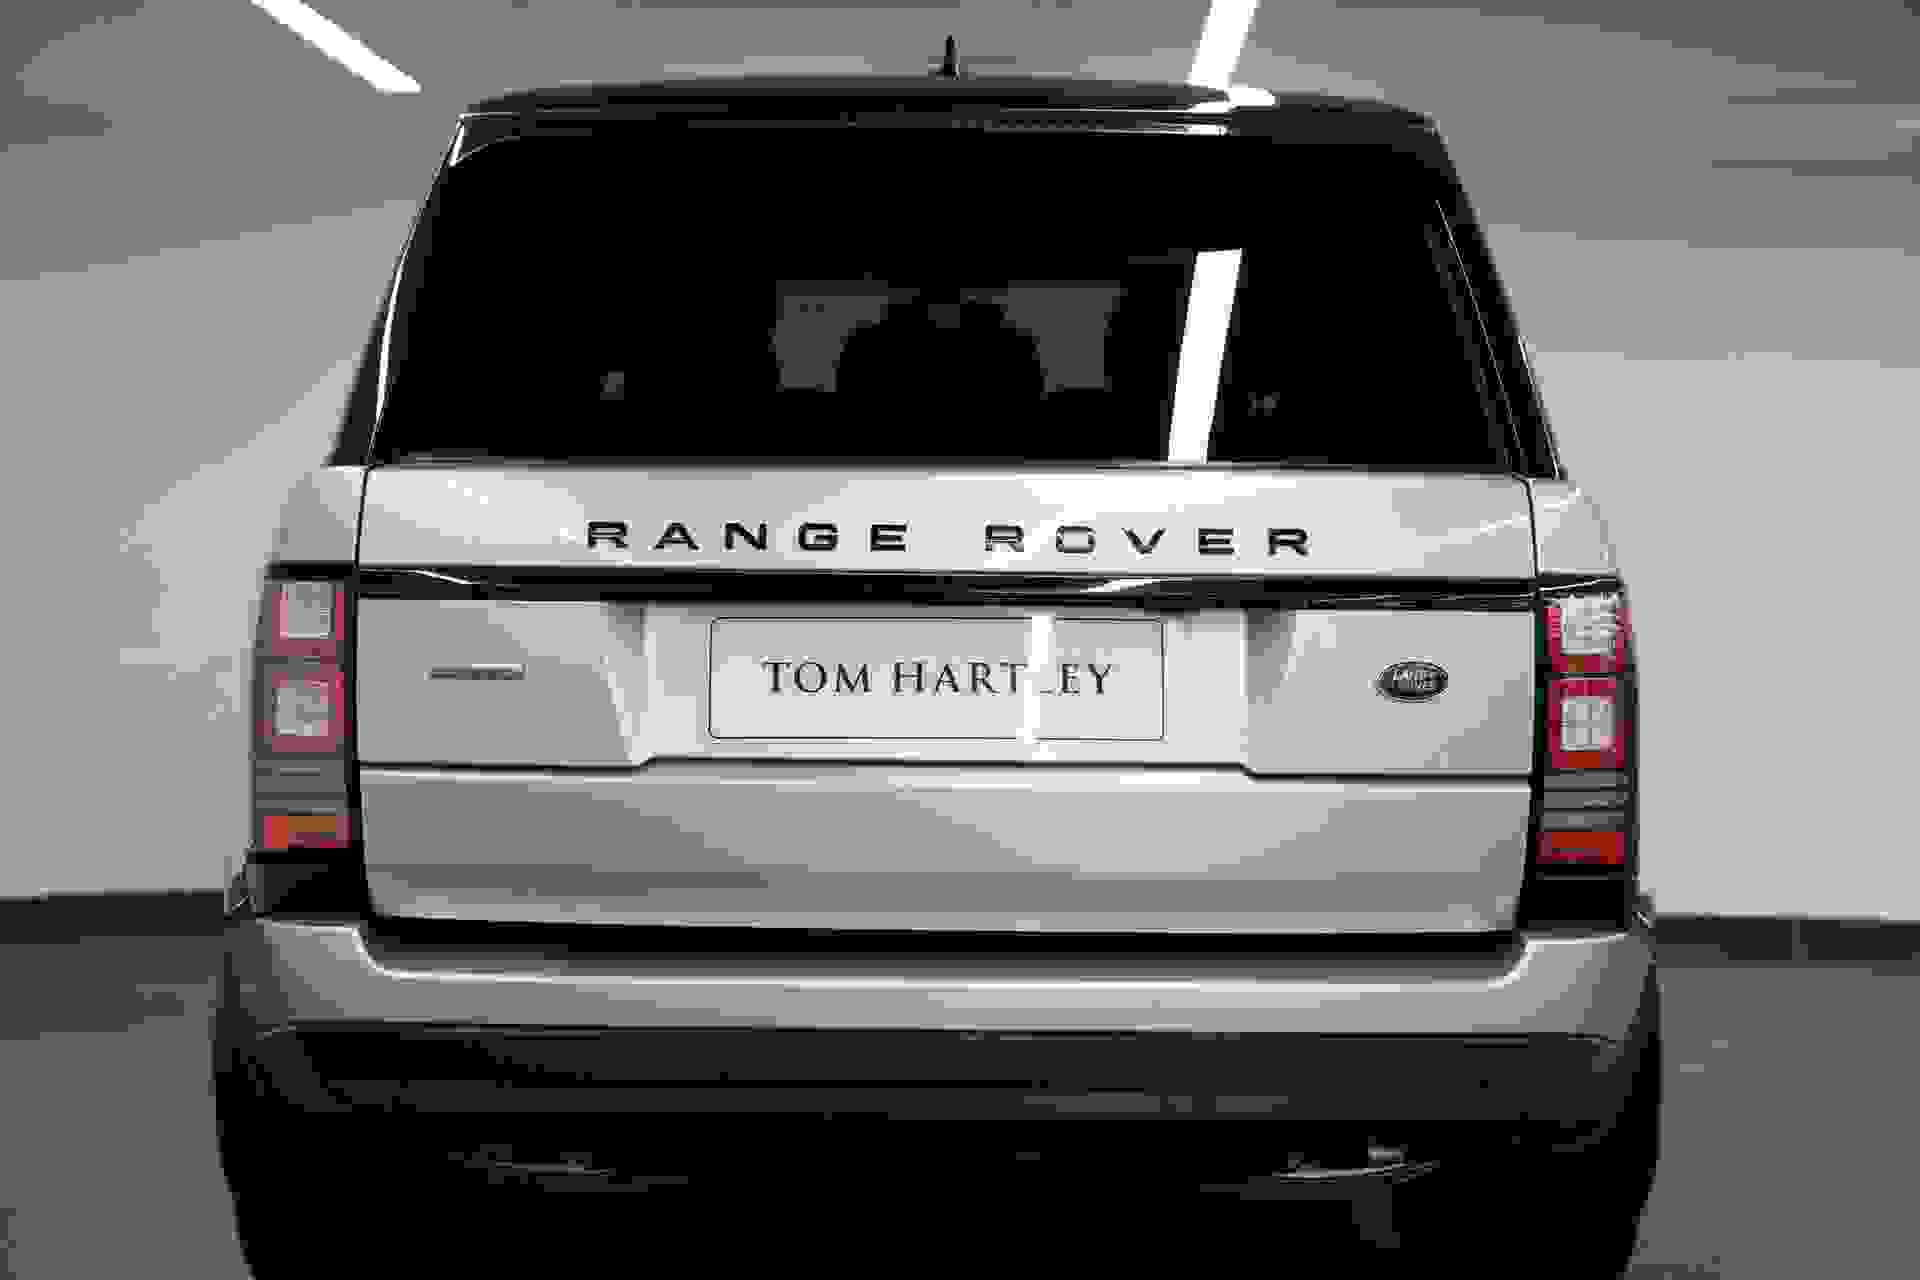 Land Rover RANGE ROVER Photo 54c50aae-c472-417b-bb71-b388f45df2e2.jpg